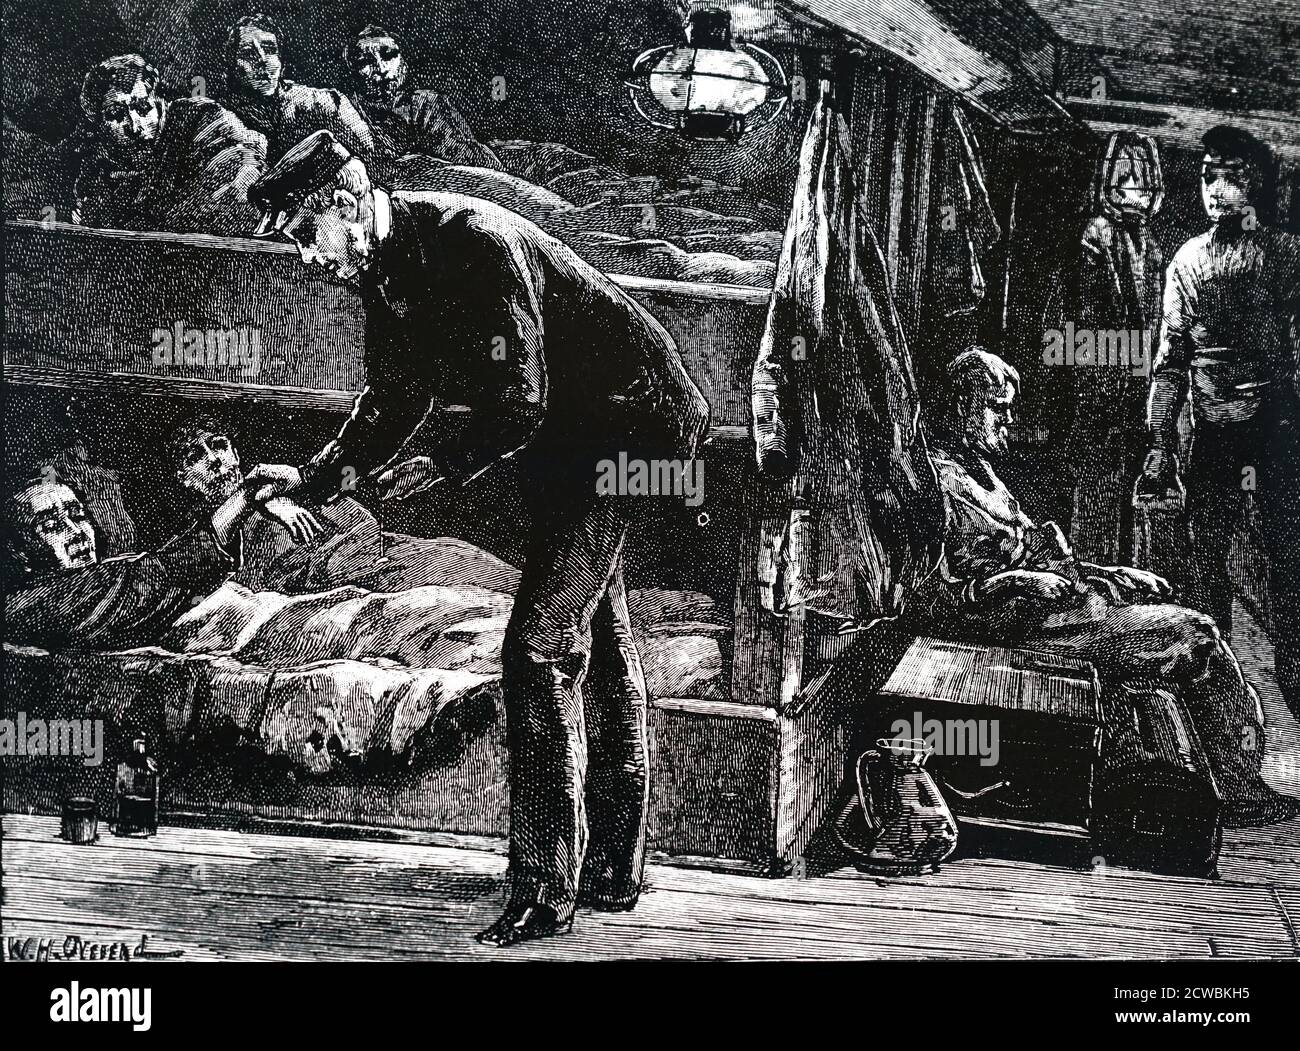 Gravur, die eine Szene an Bord eines irischen Emigrantenschiffs zeigt, das während der Kartoffelhungersnot in den 1840er Jahren nach Nordamerika verschifft wurde. Die Emigranten waren so geschwächt durch Hunger, dass Epidemien durch die beengten Quartiere fegten und die Sterblichkeitsrate hoch war. Stockfoto